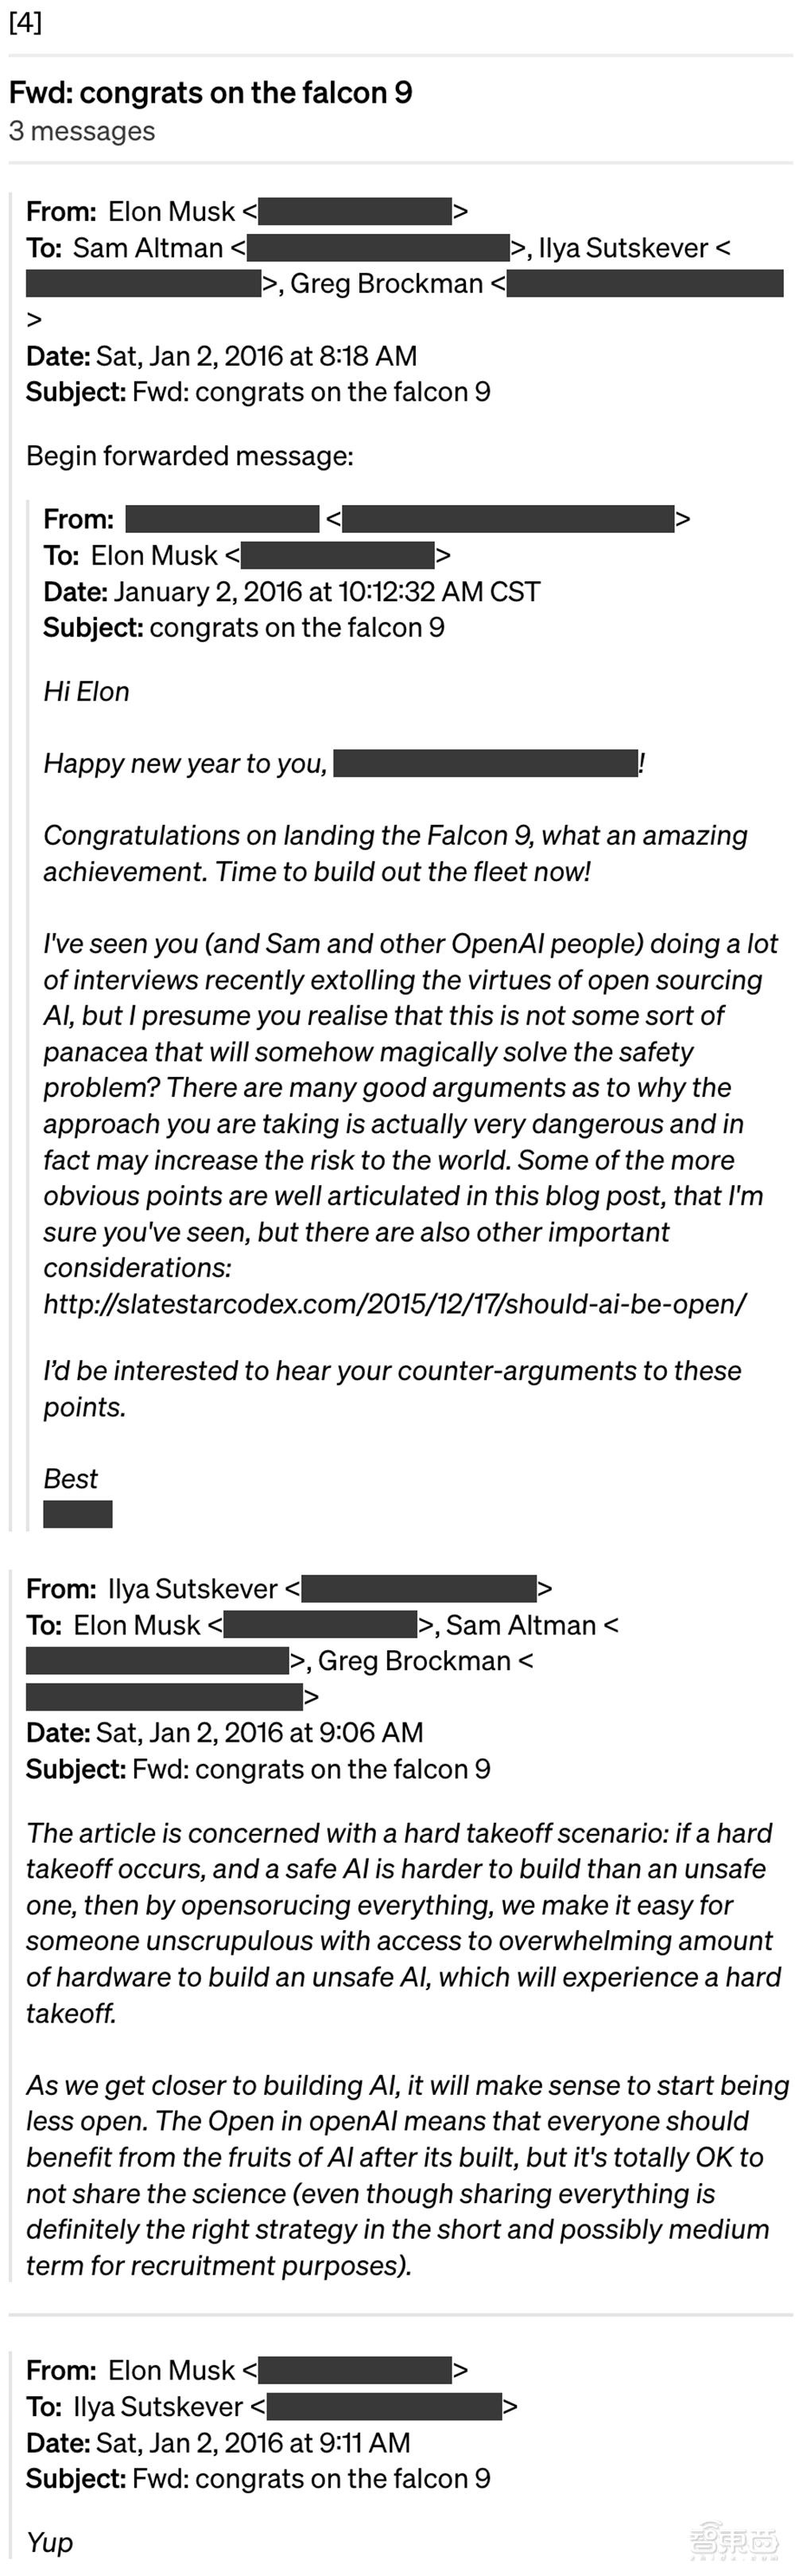 刚刚，OpenAI回击马斯克：你才是骗子！公布四封邮件铁证